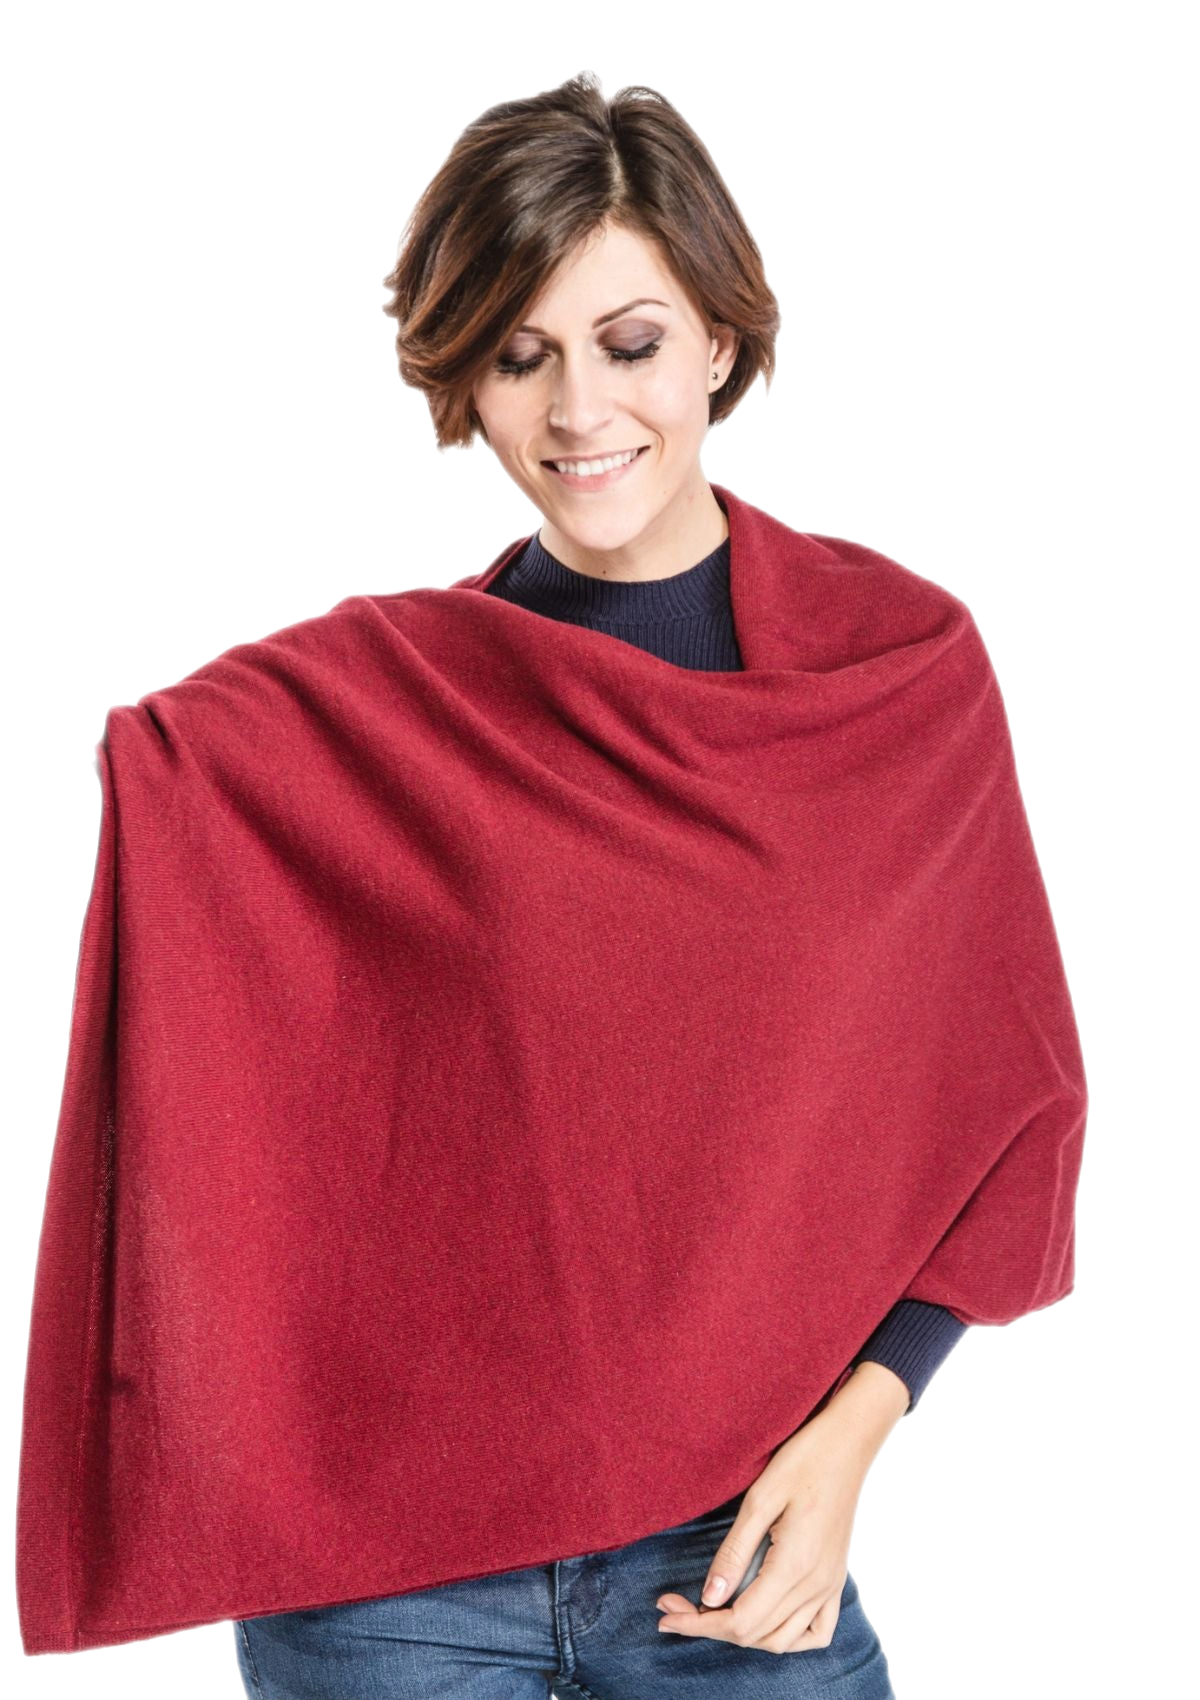 mantella coprispalle donna in cashmere color bordeaux melange